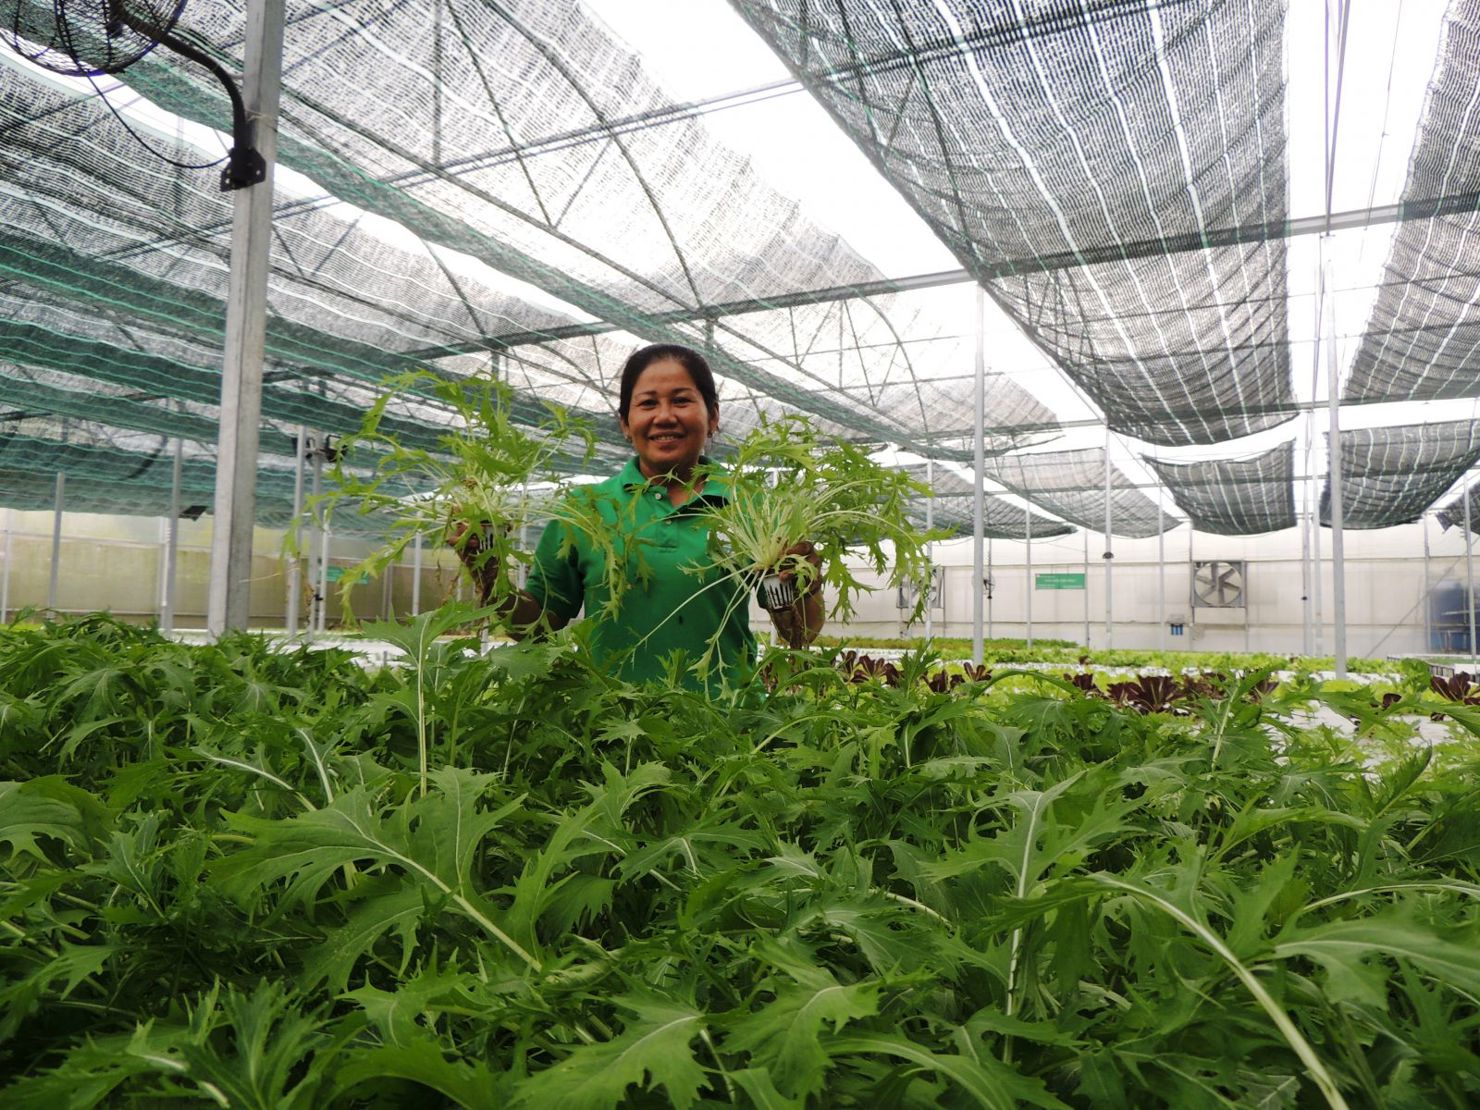 Mô hình trồng rau thủy canh áp dụng công nghệ điện toán đám mây để quản lý nhiệt độ, độ ẩm, ánh sáng tại Công ty TNHH Đầu tư và Phát triển Minh Hòa. Ảnh: MT